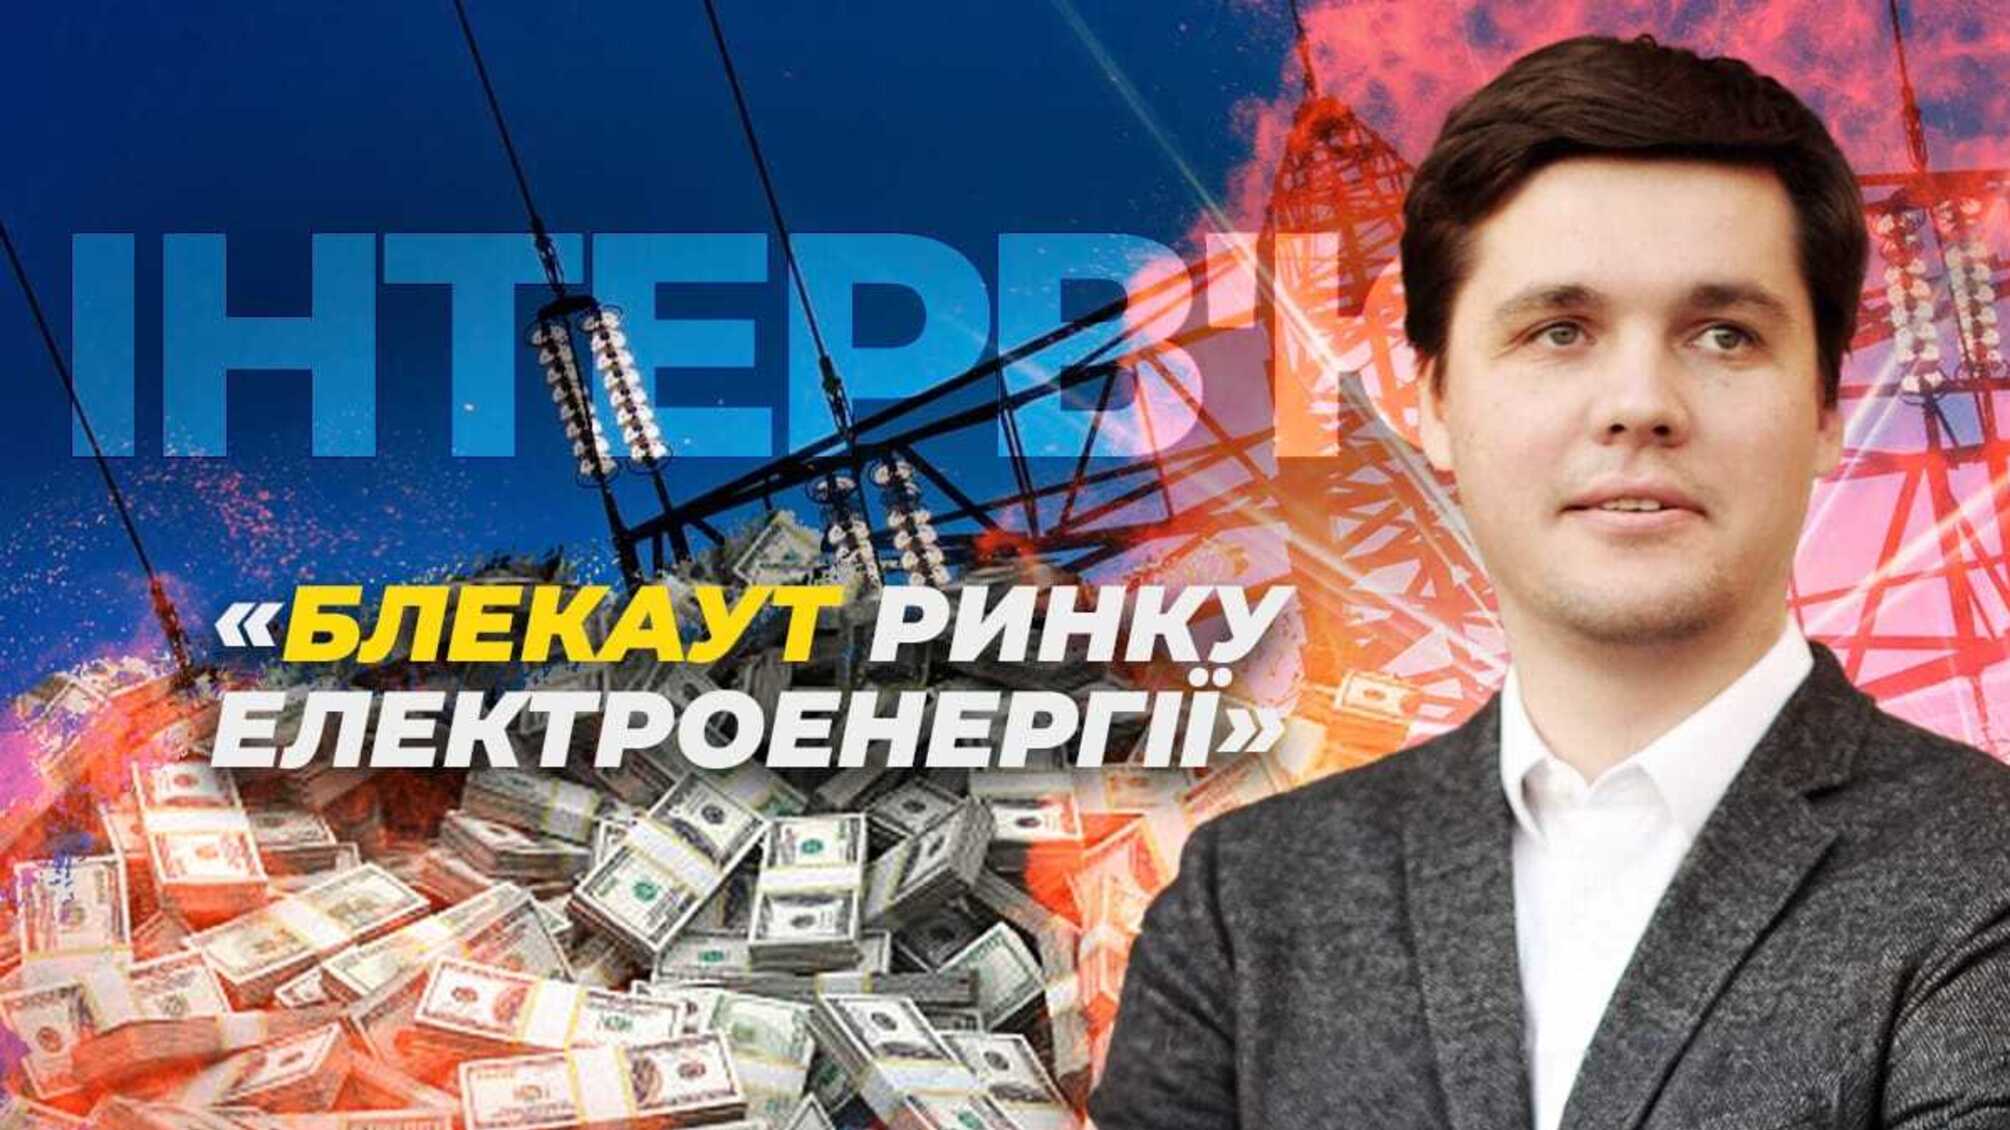 Олександр Візір про причини можливого 'блекауту' ринку електроенергії в Україні